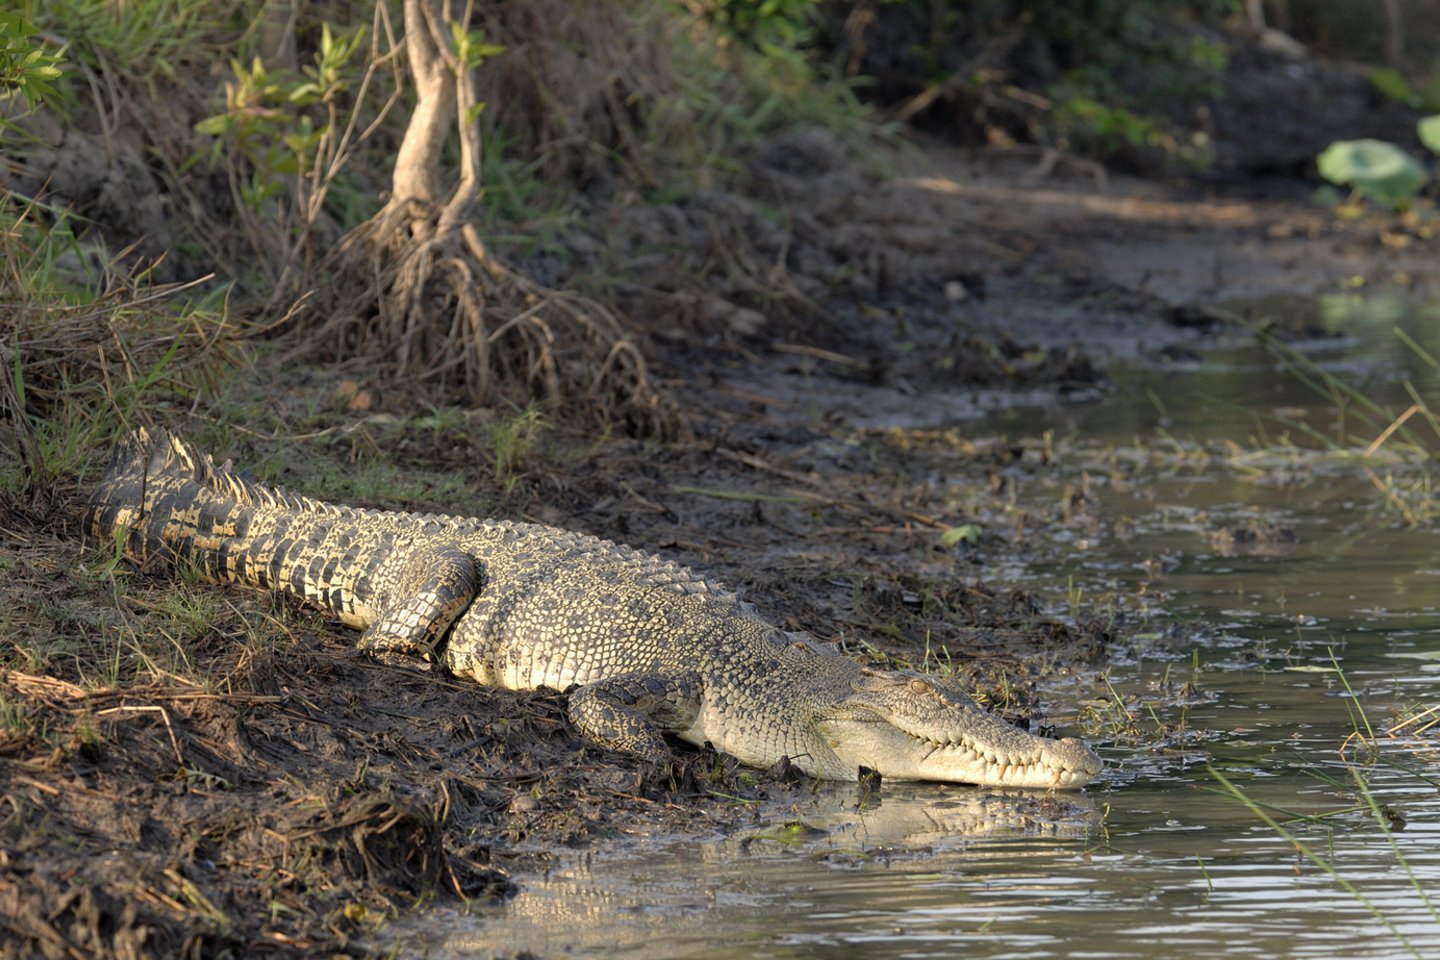  Briaunagalviai krokodilai, kurie gali išaugti iki 7 m ilgio ir sverti daugiau kaip toną, yra dažni atogrąžose Australijos šiaurėje ir per metus nužudo vidutiniškai po du žmones.<br> Wikipedia nuotr.